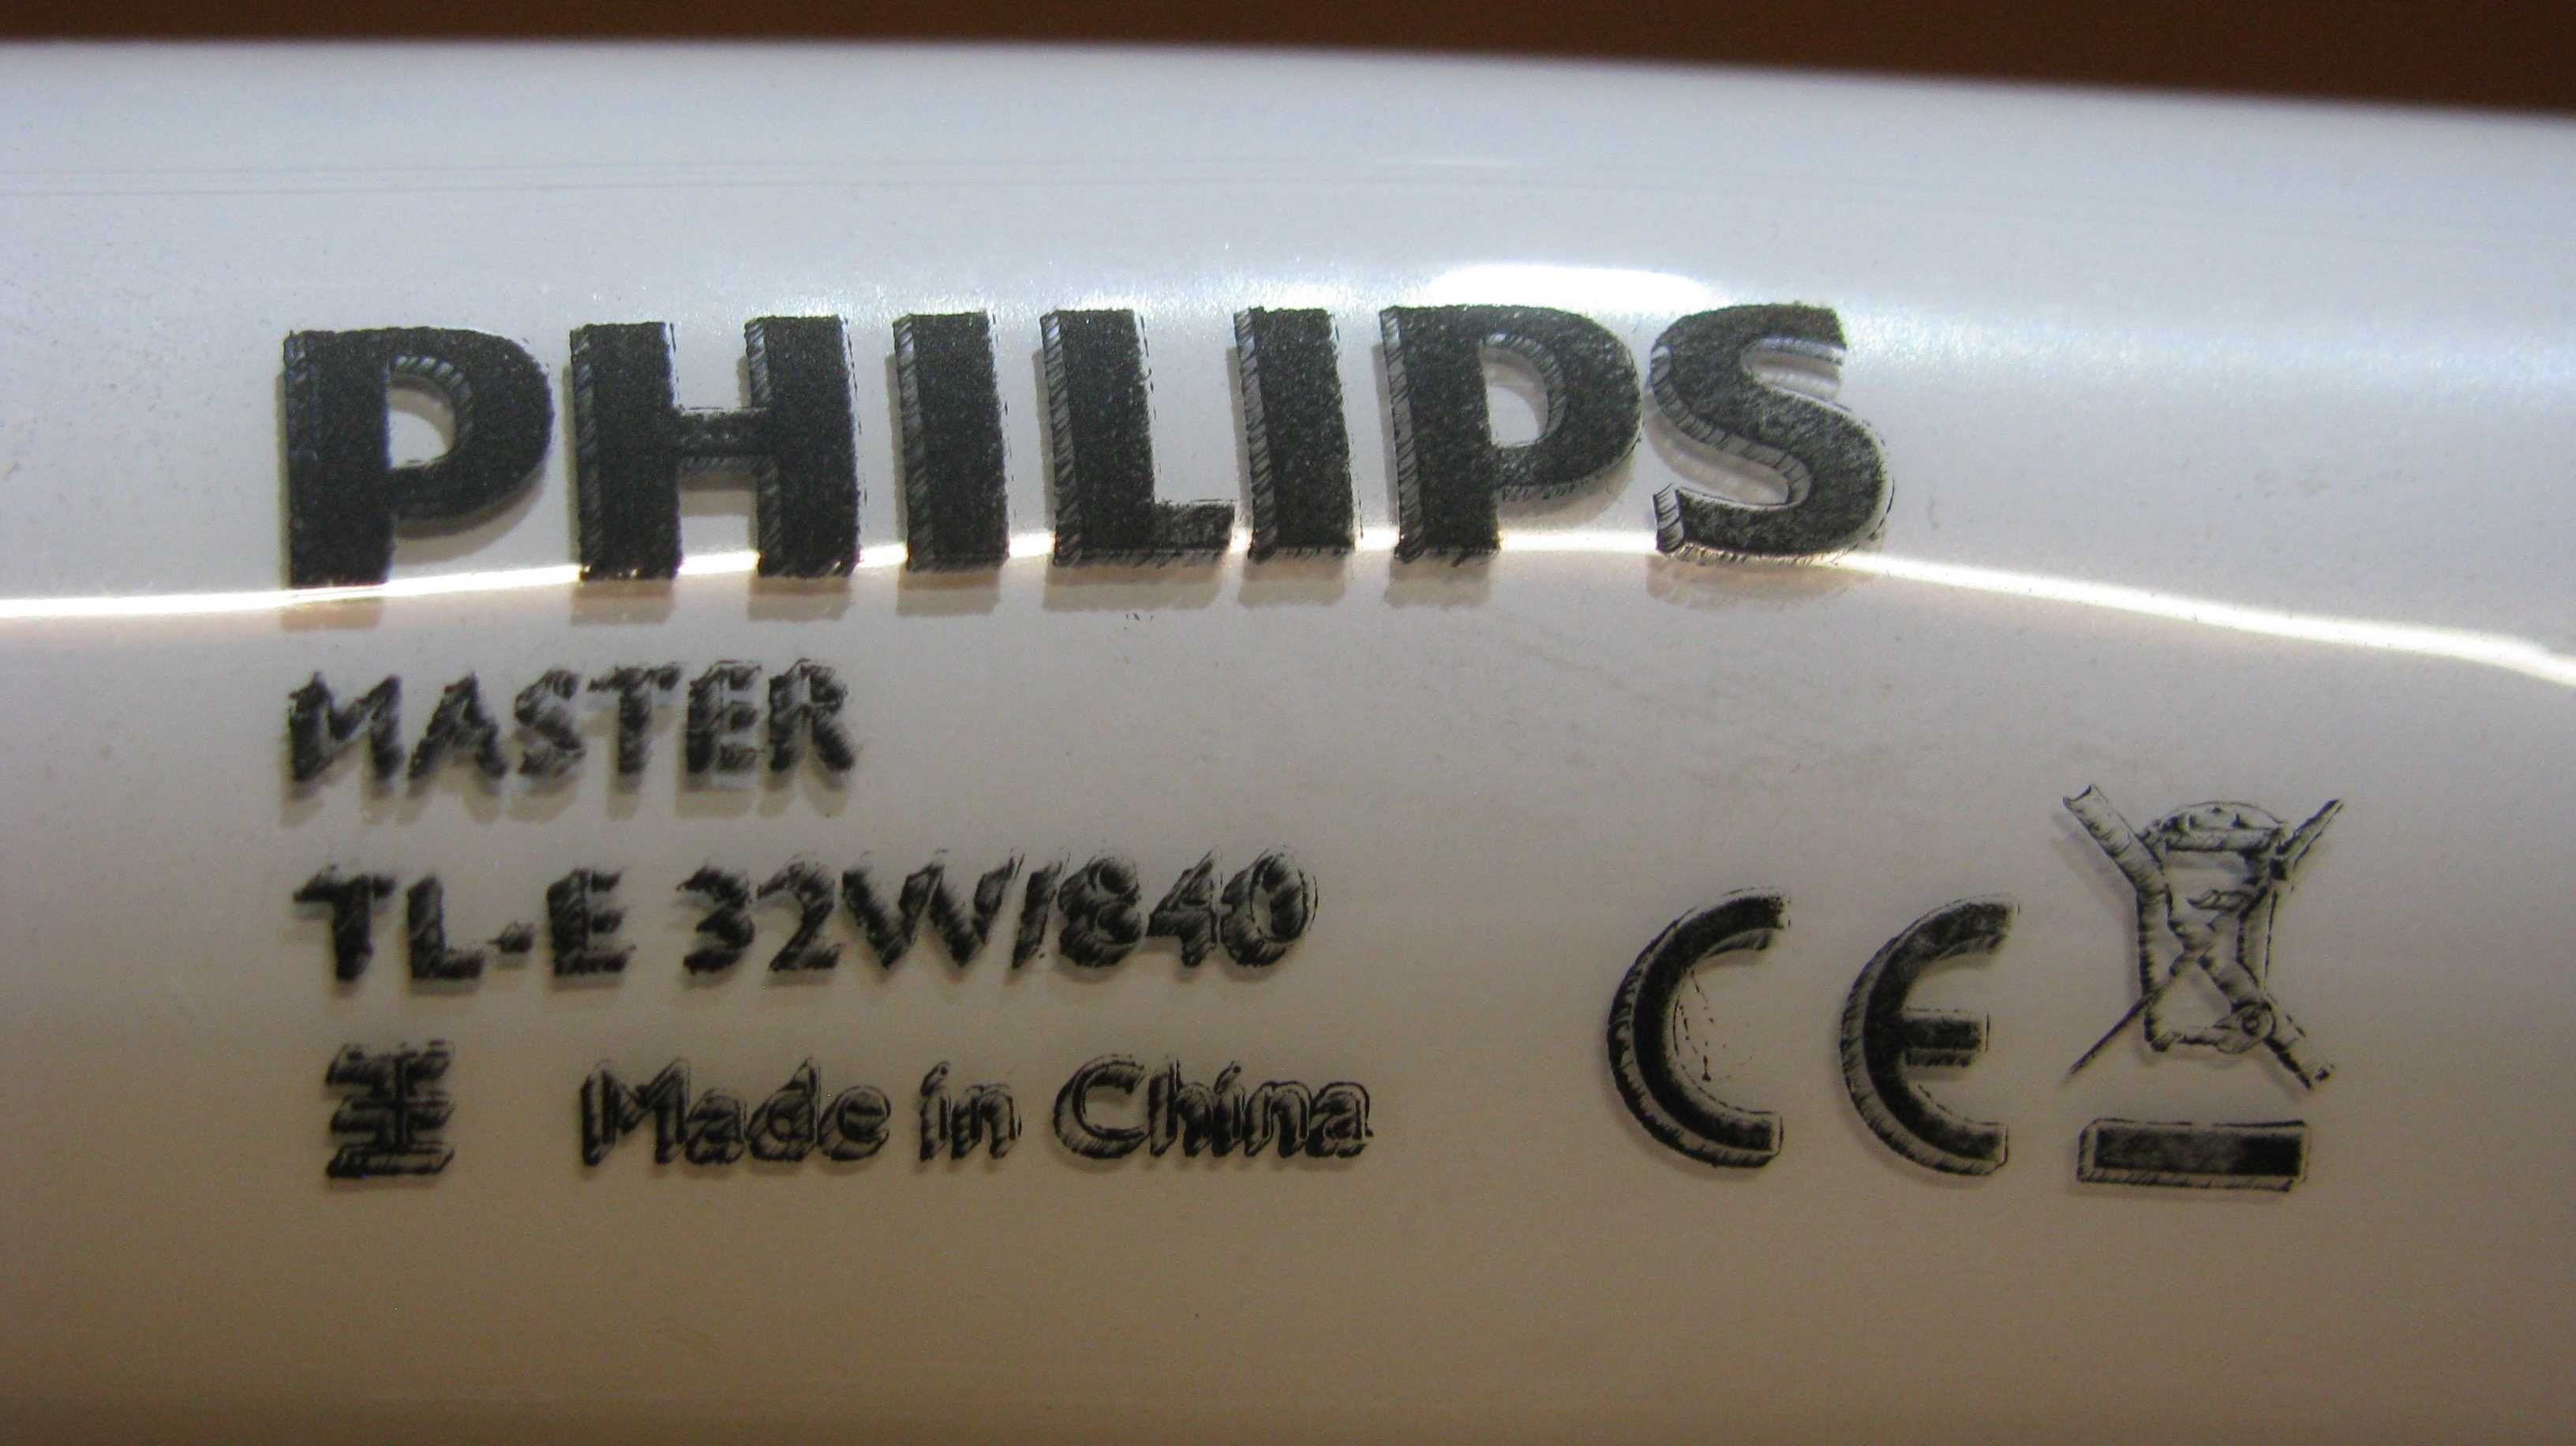 Świetlówka Philips TL-E 32W/840 G10q jażeniówka okrągła 30 cm